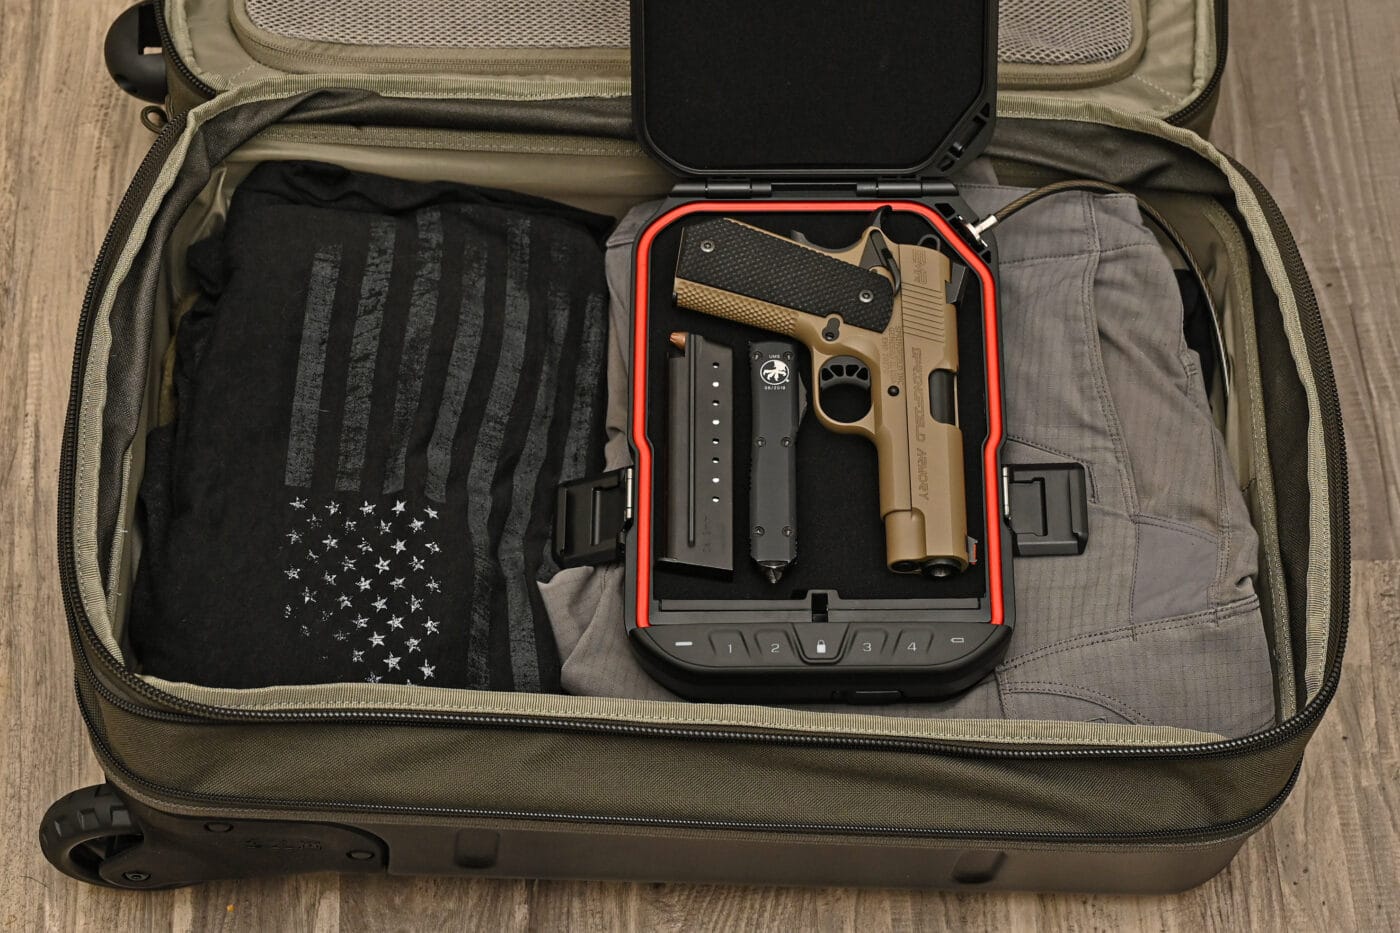 Vaultek LifePod open in luggage with pistol in it